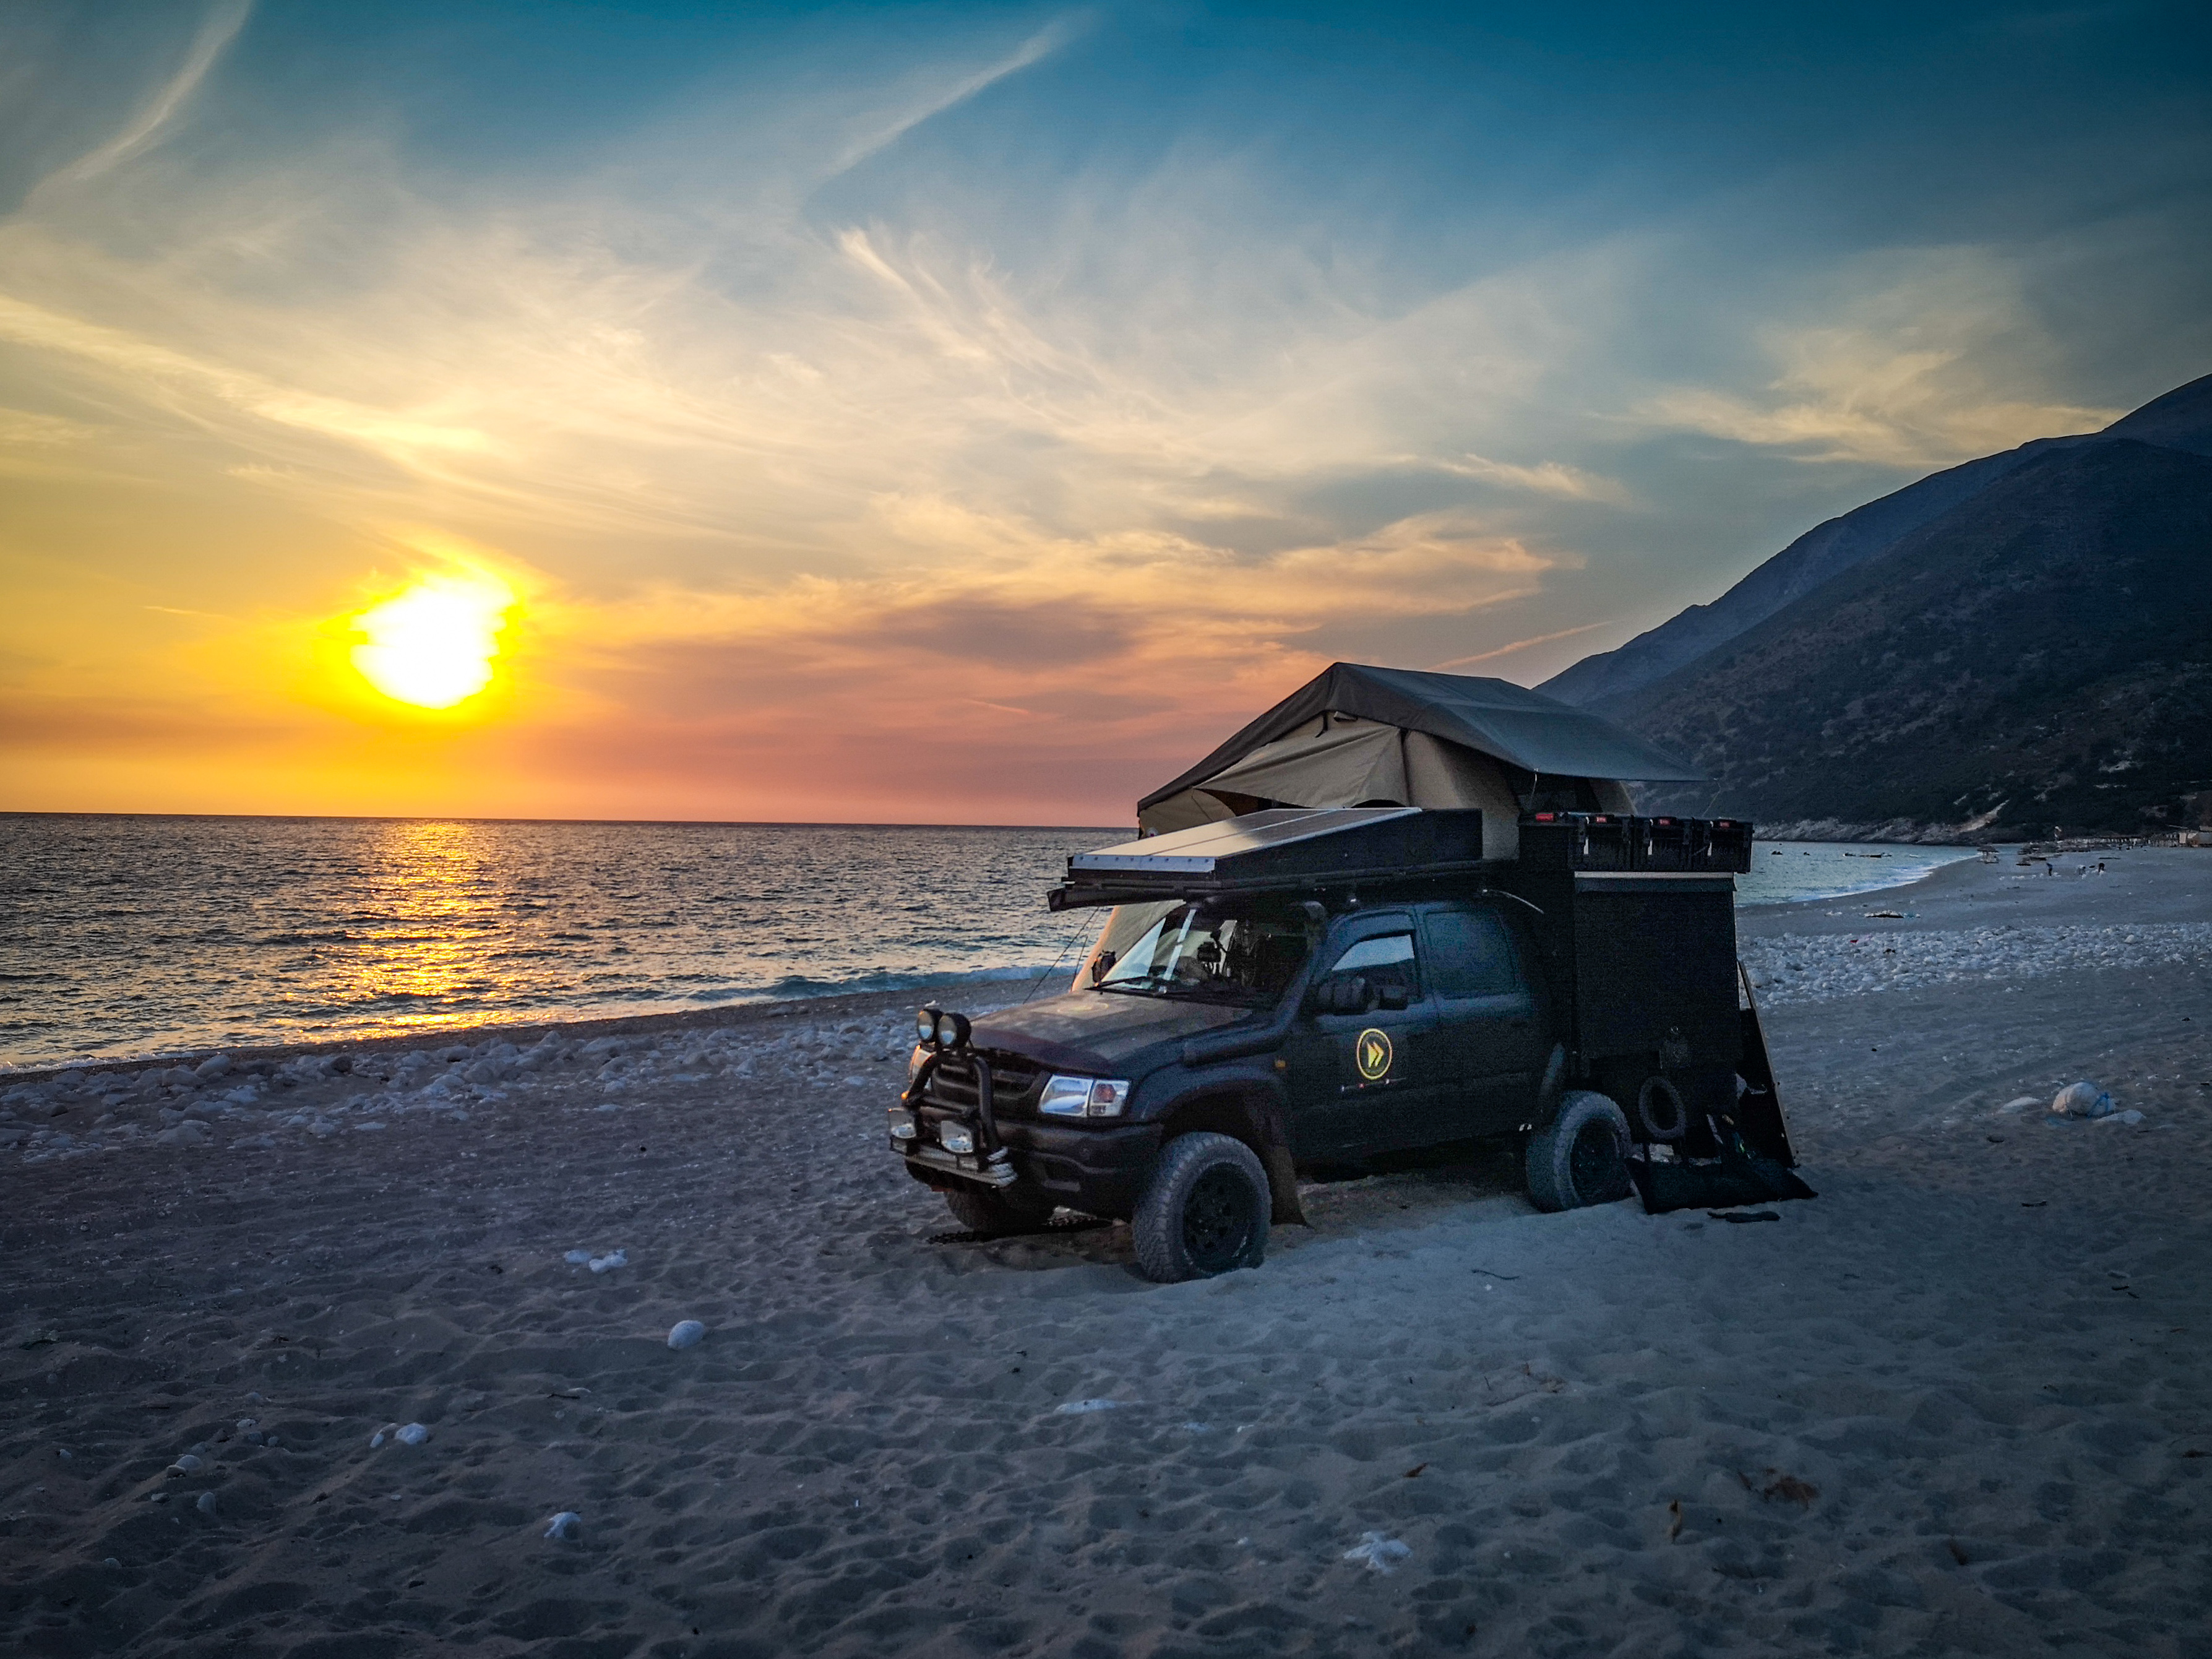 Zachód słońca, samochód terenowy na plaży w Albanii. Obozowanie, spanie  na dziko.
Sunset, 4x4 truck on a beach in Albania. Wild camping, sleeping, camping on a beach in Albania.